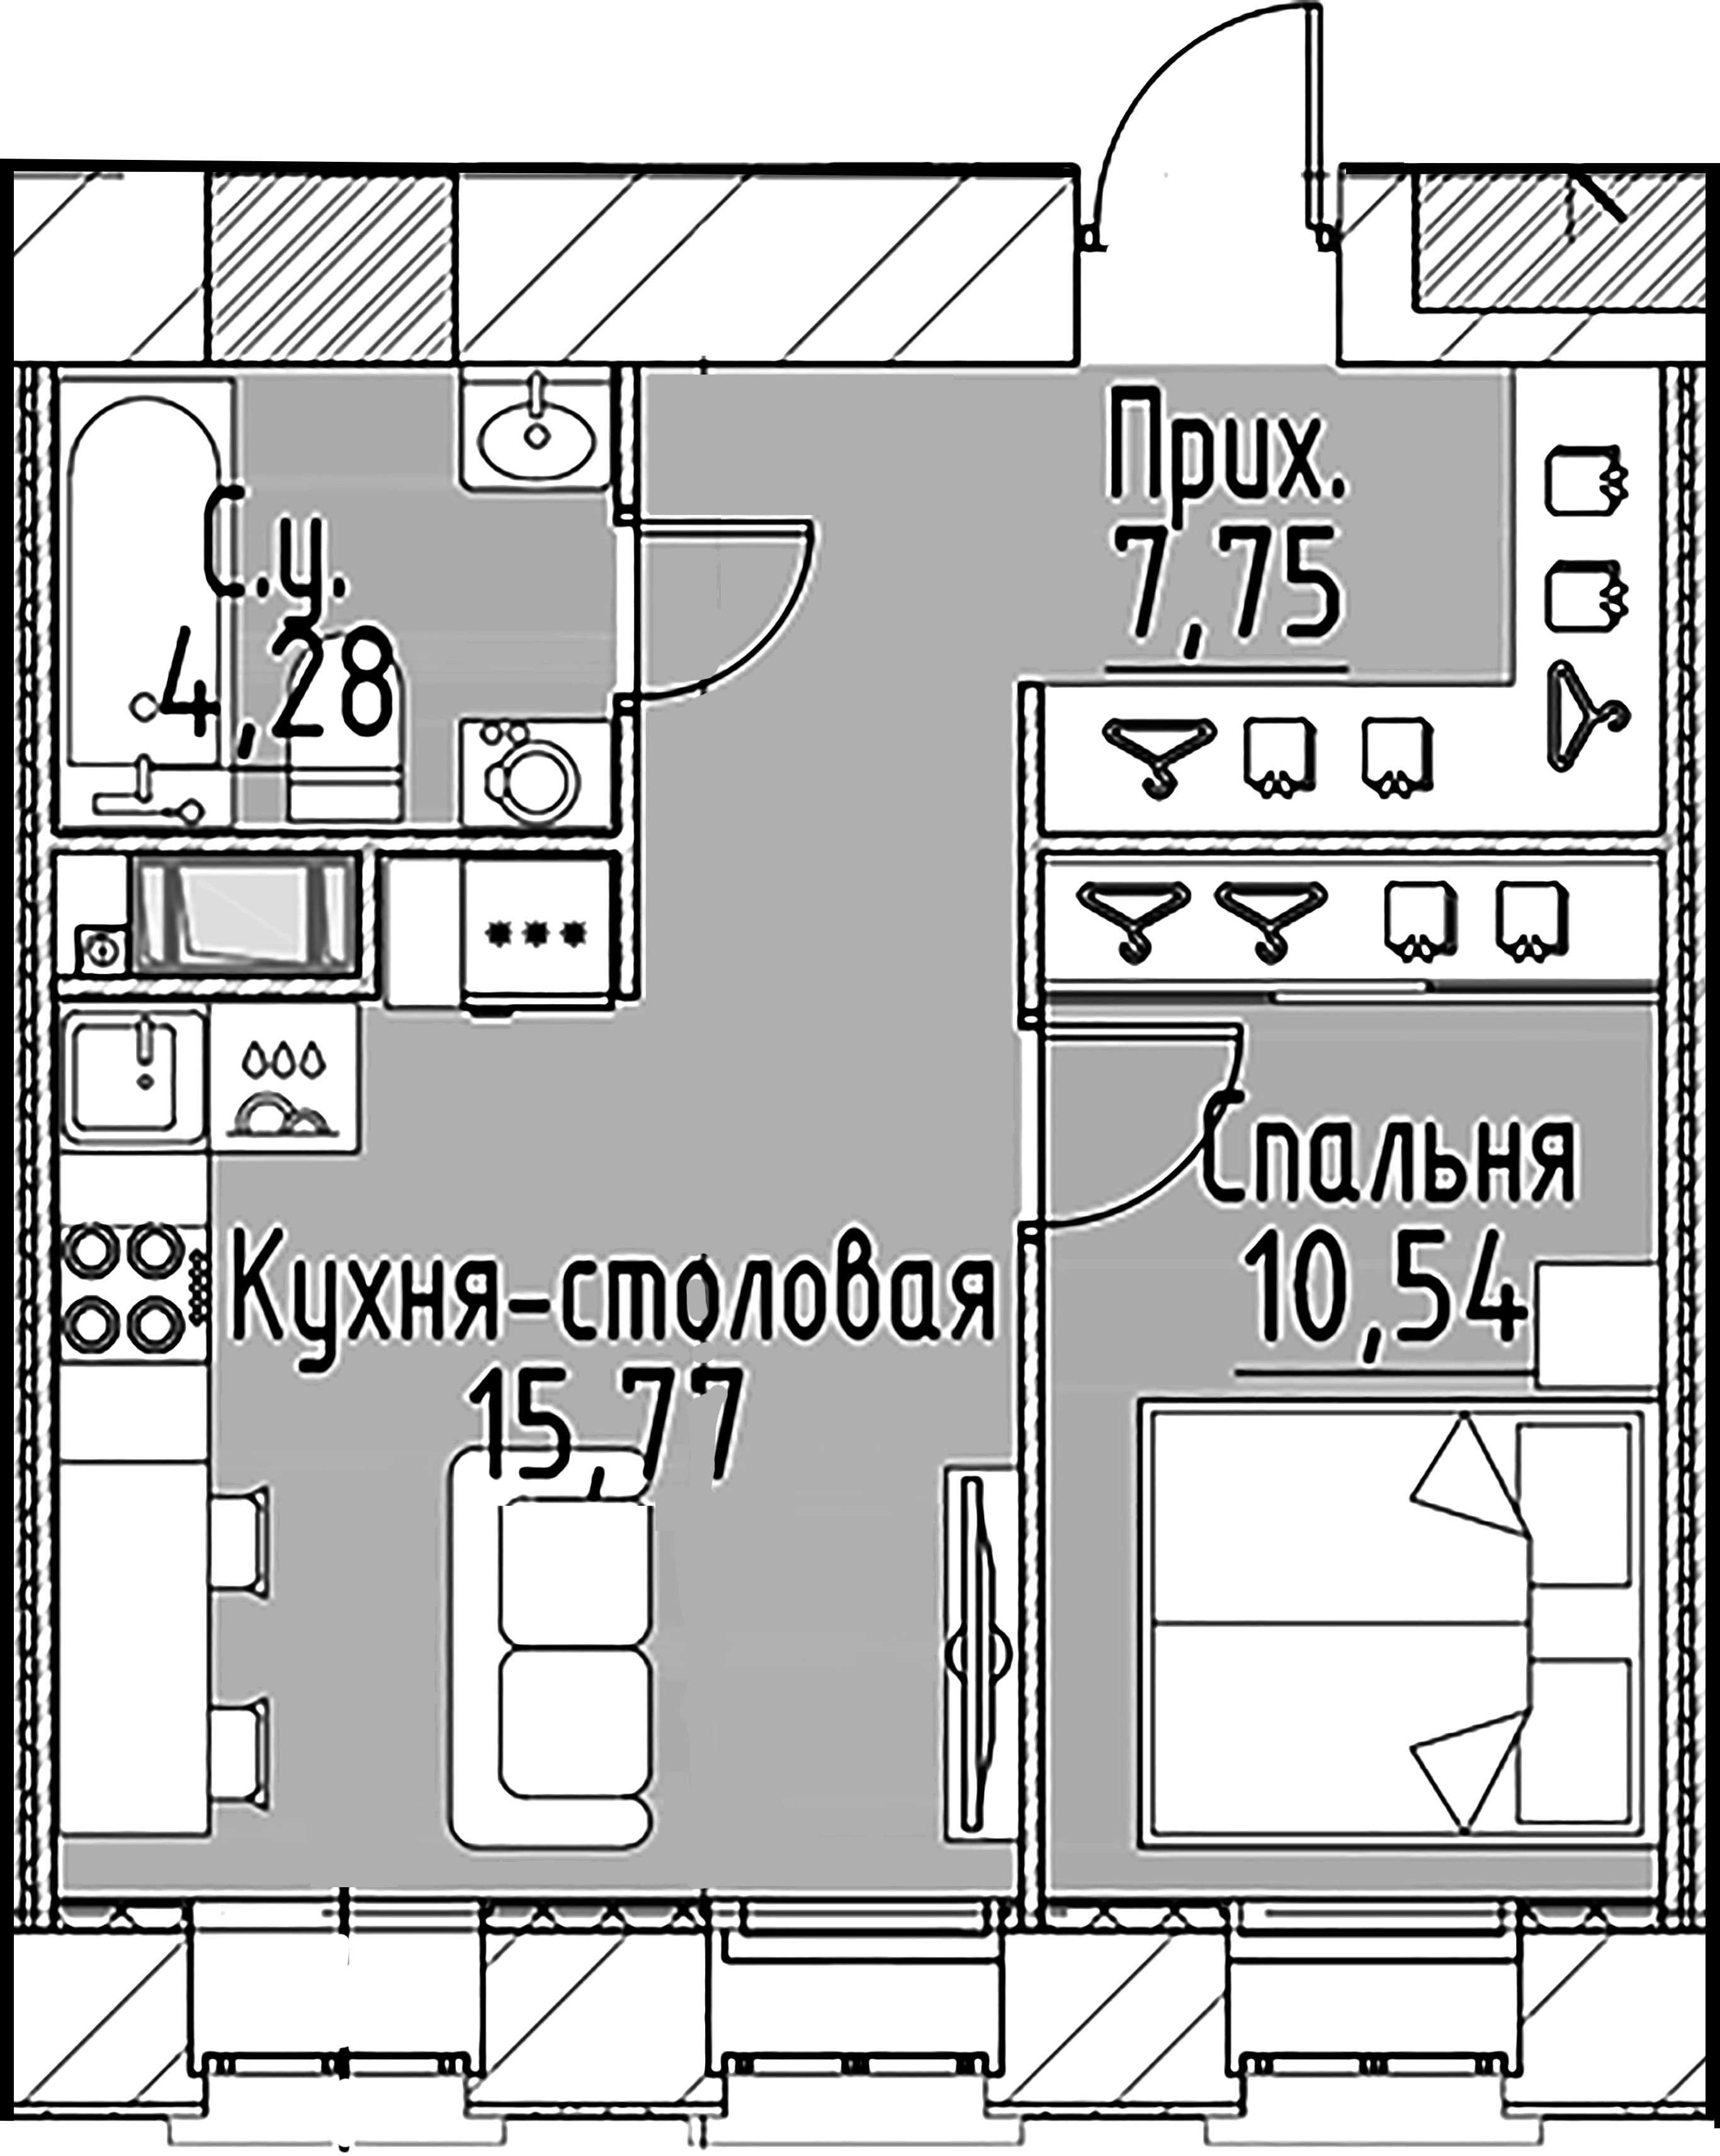 1-комнатная квартира  №148 в Моисеенко, 10: 38.34 м², этаж 3 - купить в Санкт-Петербурге